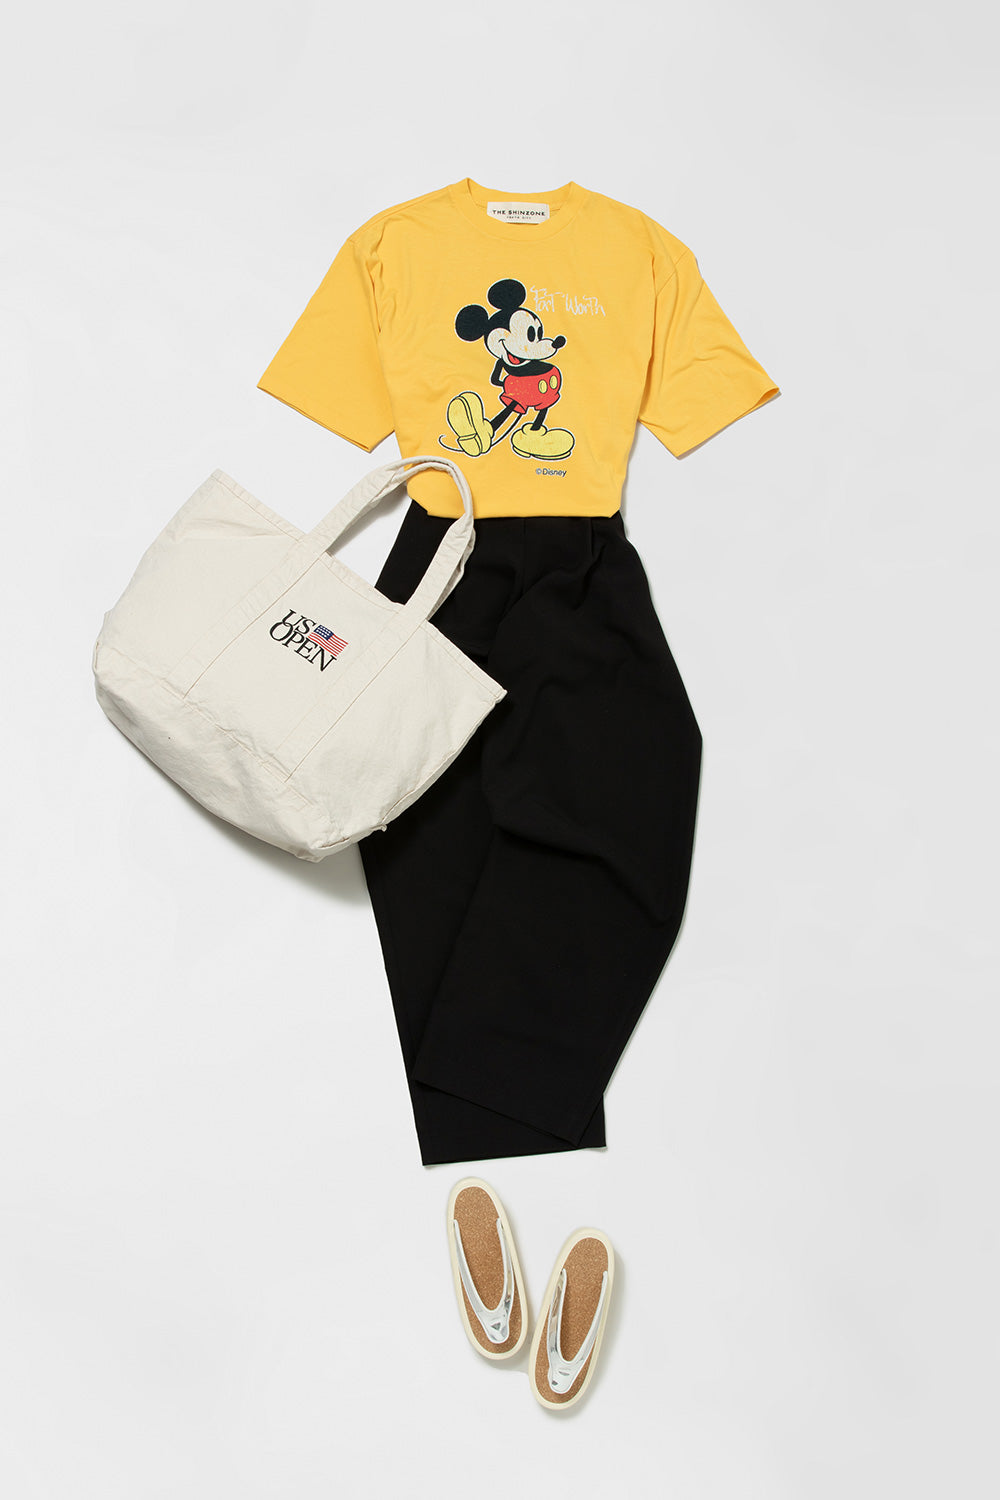 ザ シンゾーンのミッキーマウスプリントの黄色いTシャツとクラネの黒いパンツにシンゾーンのトートを合わせたスタイリング